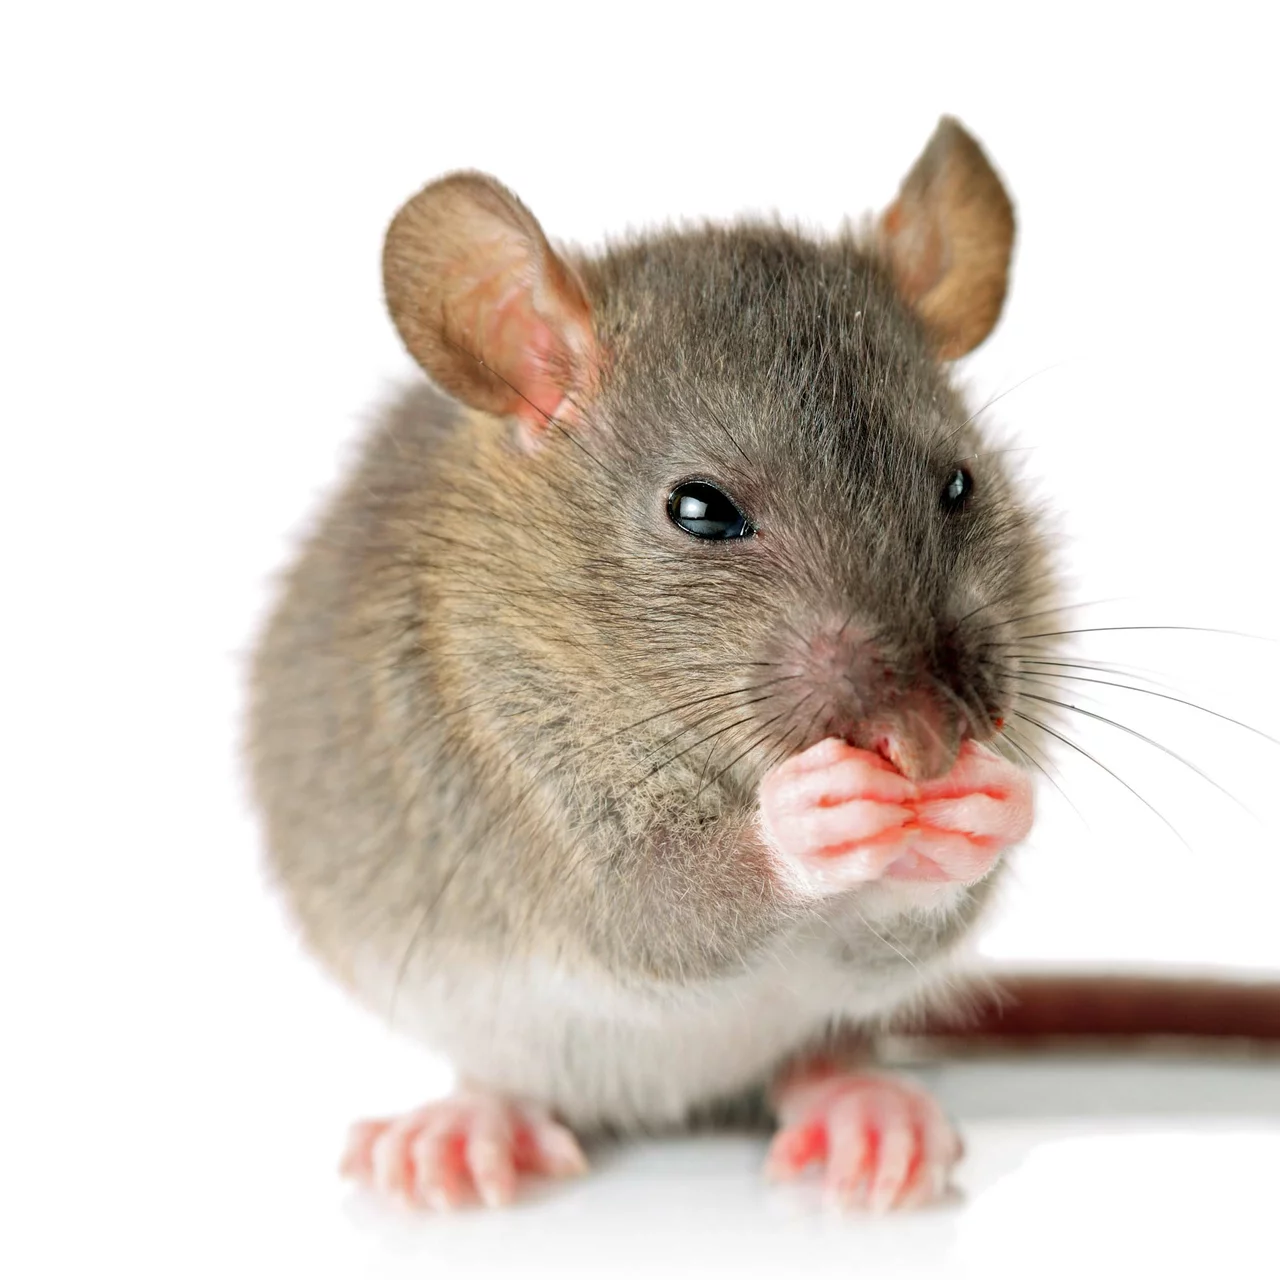 Piège à souris pour la capture vivante – Attraper les souris